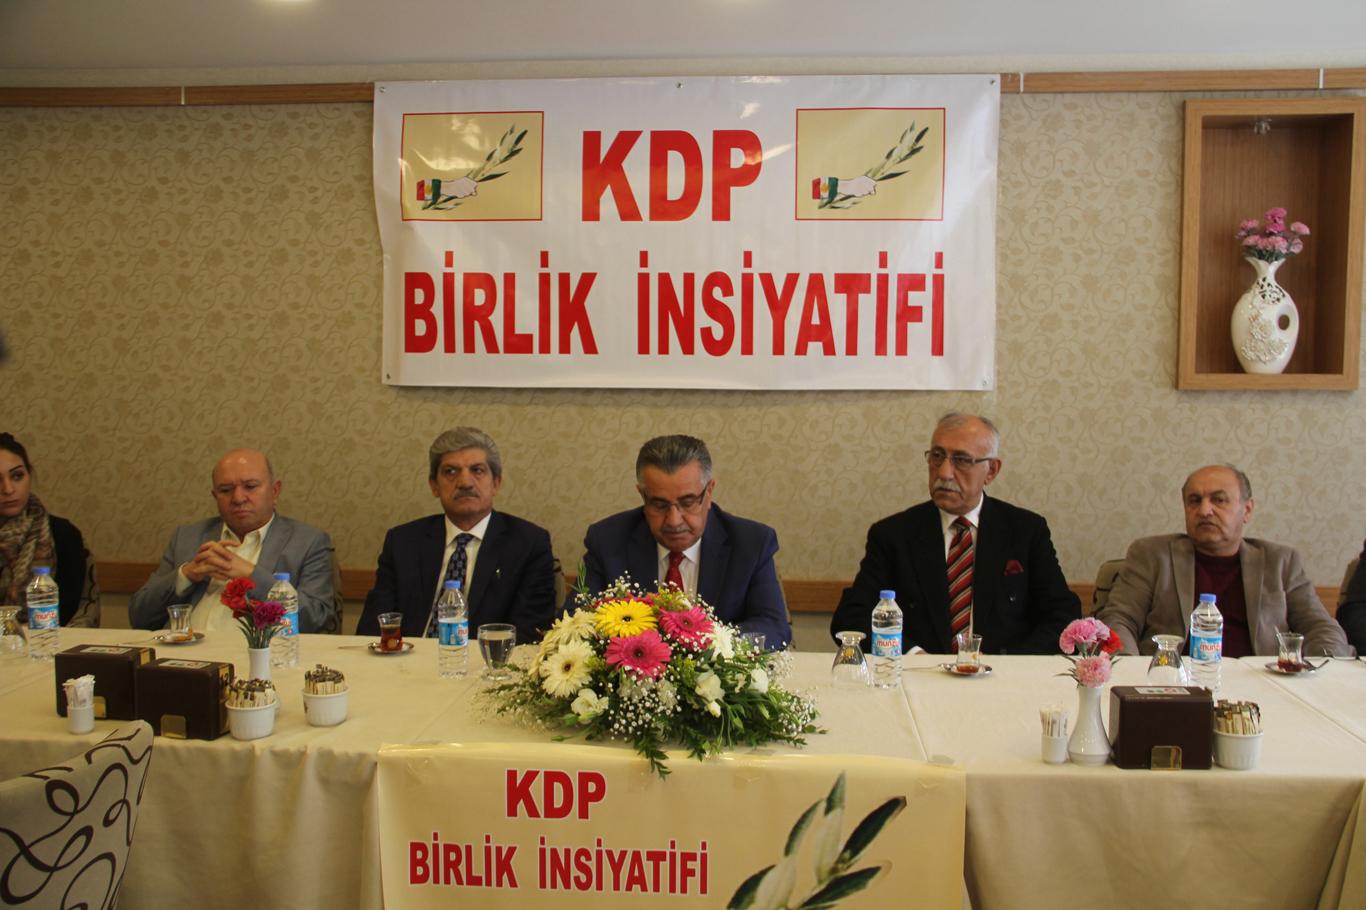 KDP’den referandum açıklaması